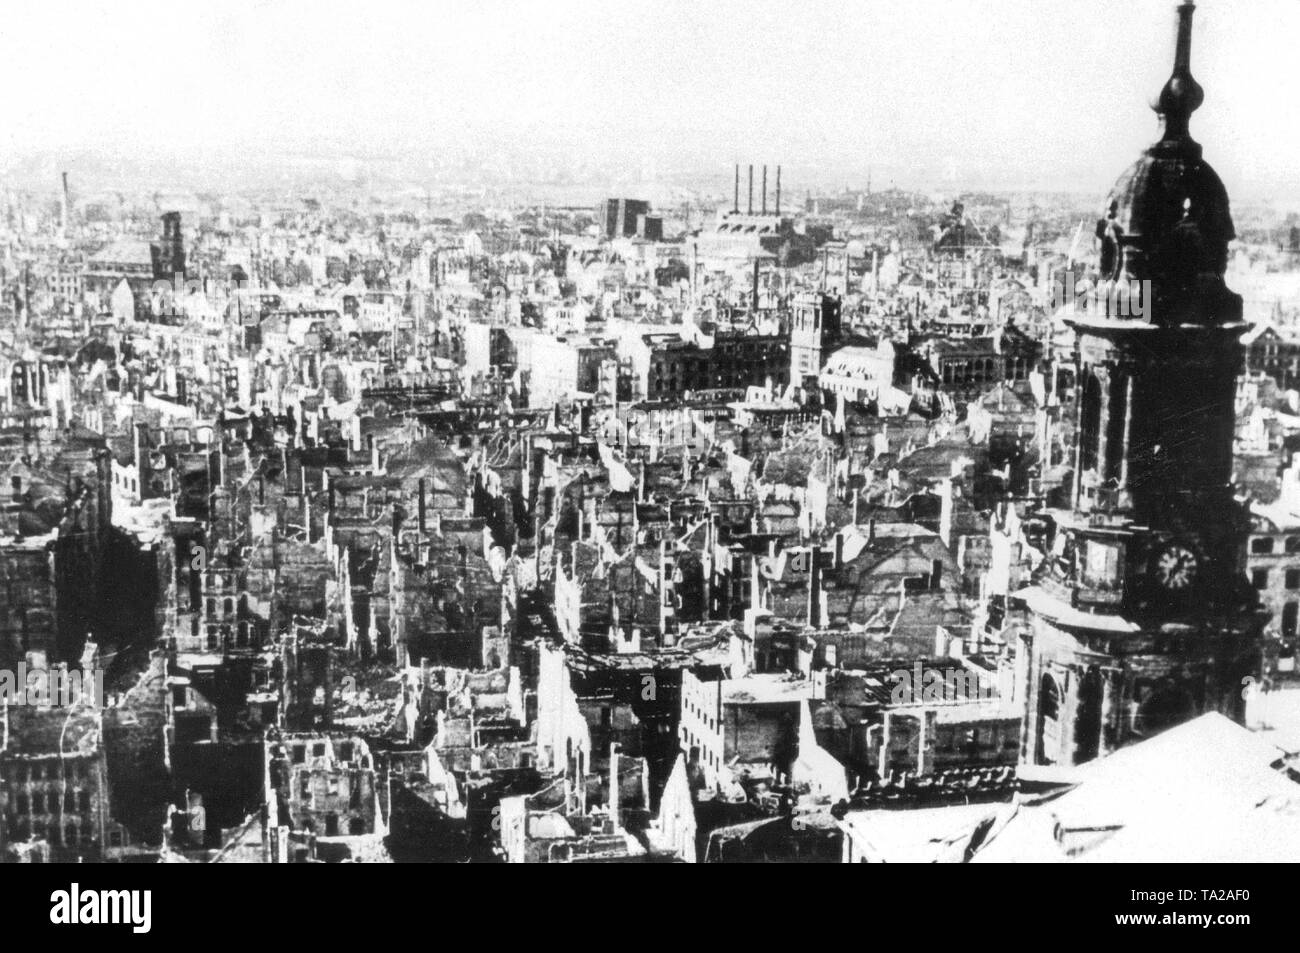 Die Bombardierung Dresdens durch die britische Royal Air Force (RAF) und der United States Army Air Force (Usaaf) fand zwischen 13. Februar und 15. Februar 1945, Stockfoto